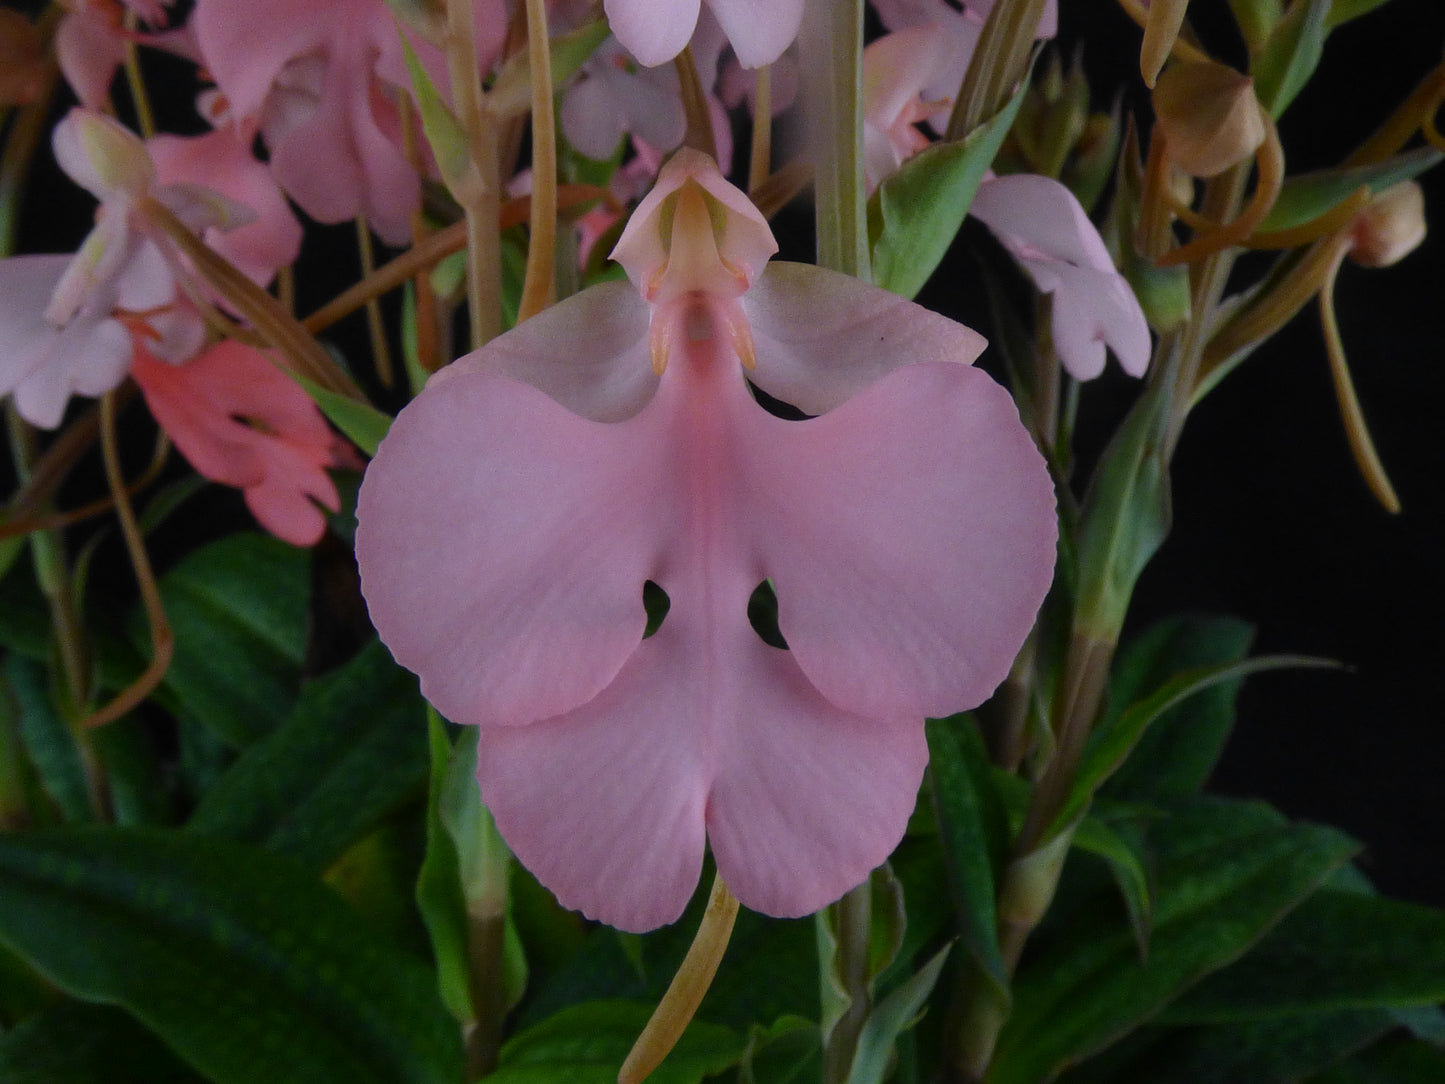 Habenaria Raingreen's Pink Paw 'Bubbley' - Seedling size tuber